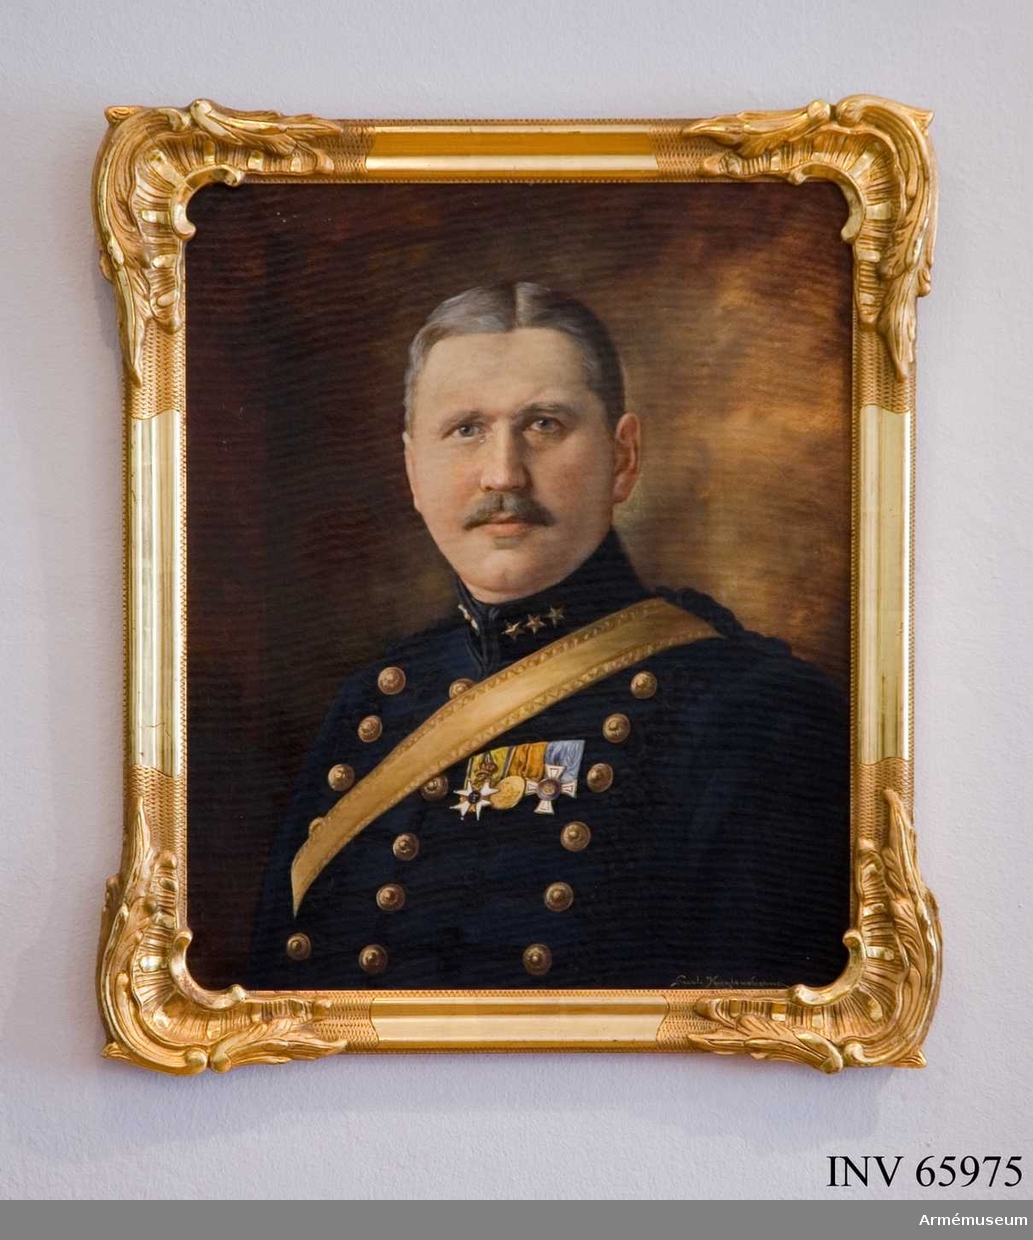 Grupp M I.
Målning signerad Gurli Kuylenstierna föreställande majoren Oswald Kuylenstierna (1865-1932). 
Samhörande guldram.